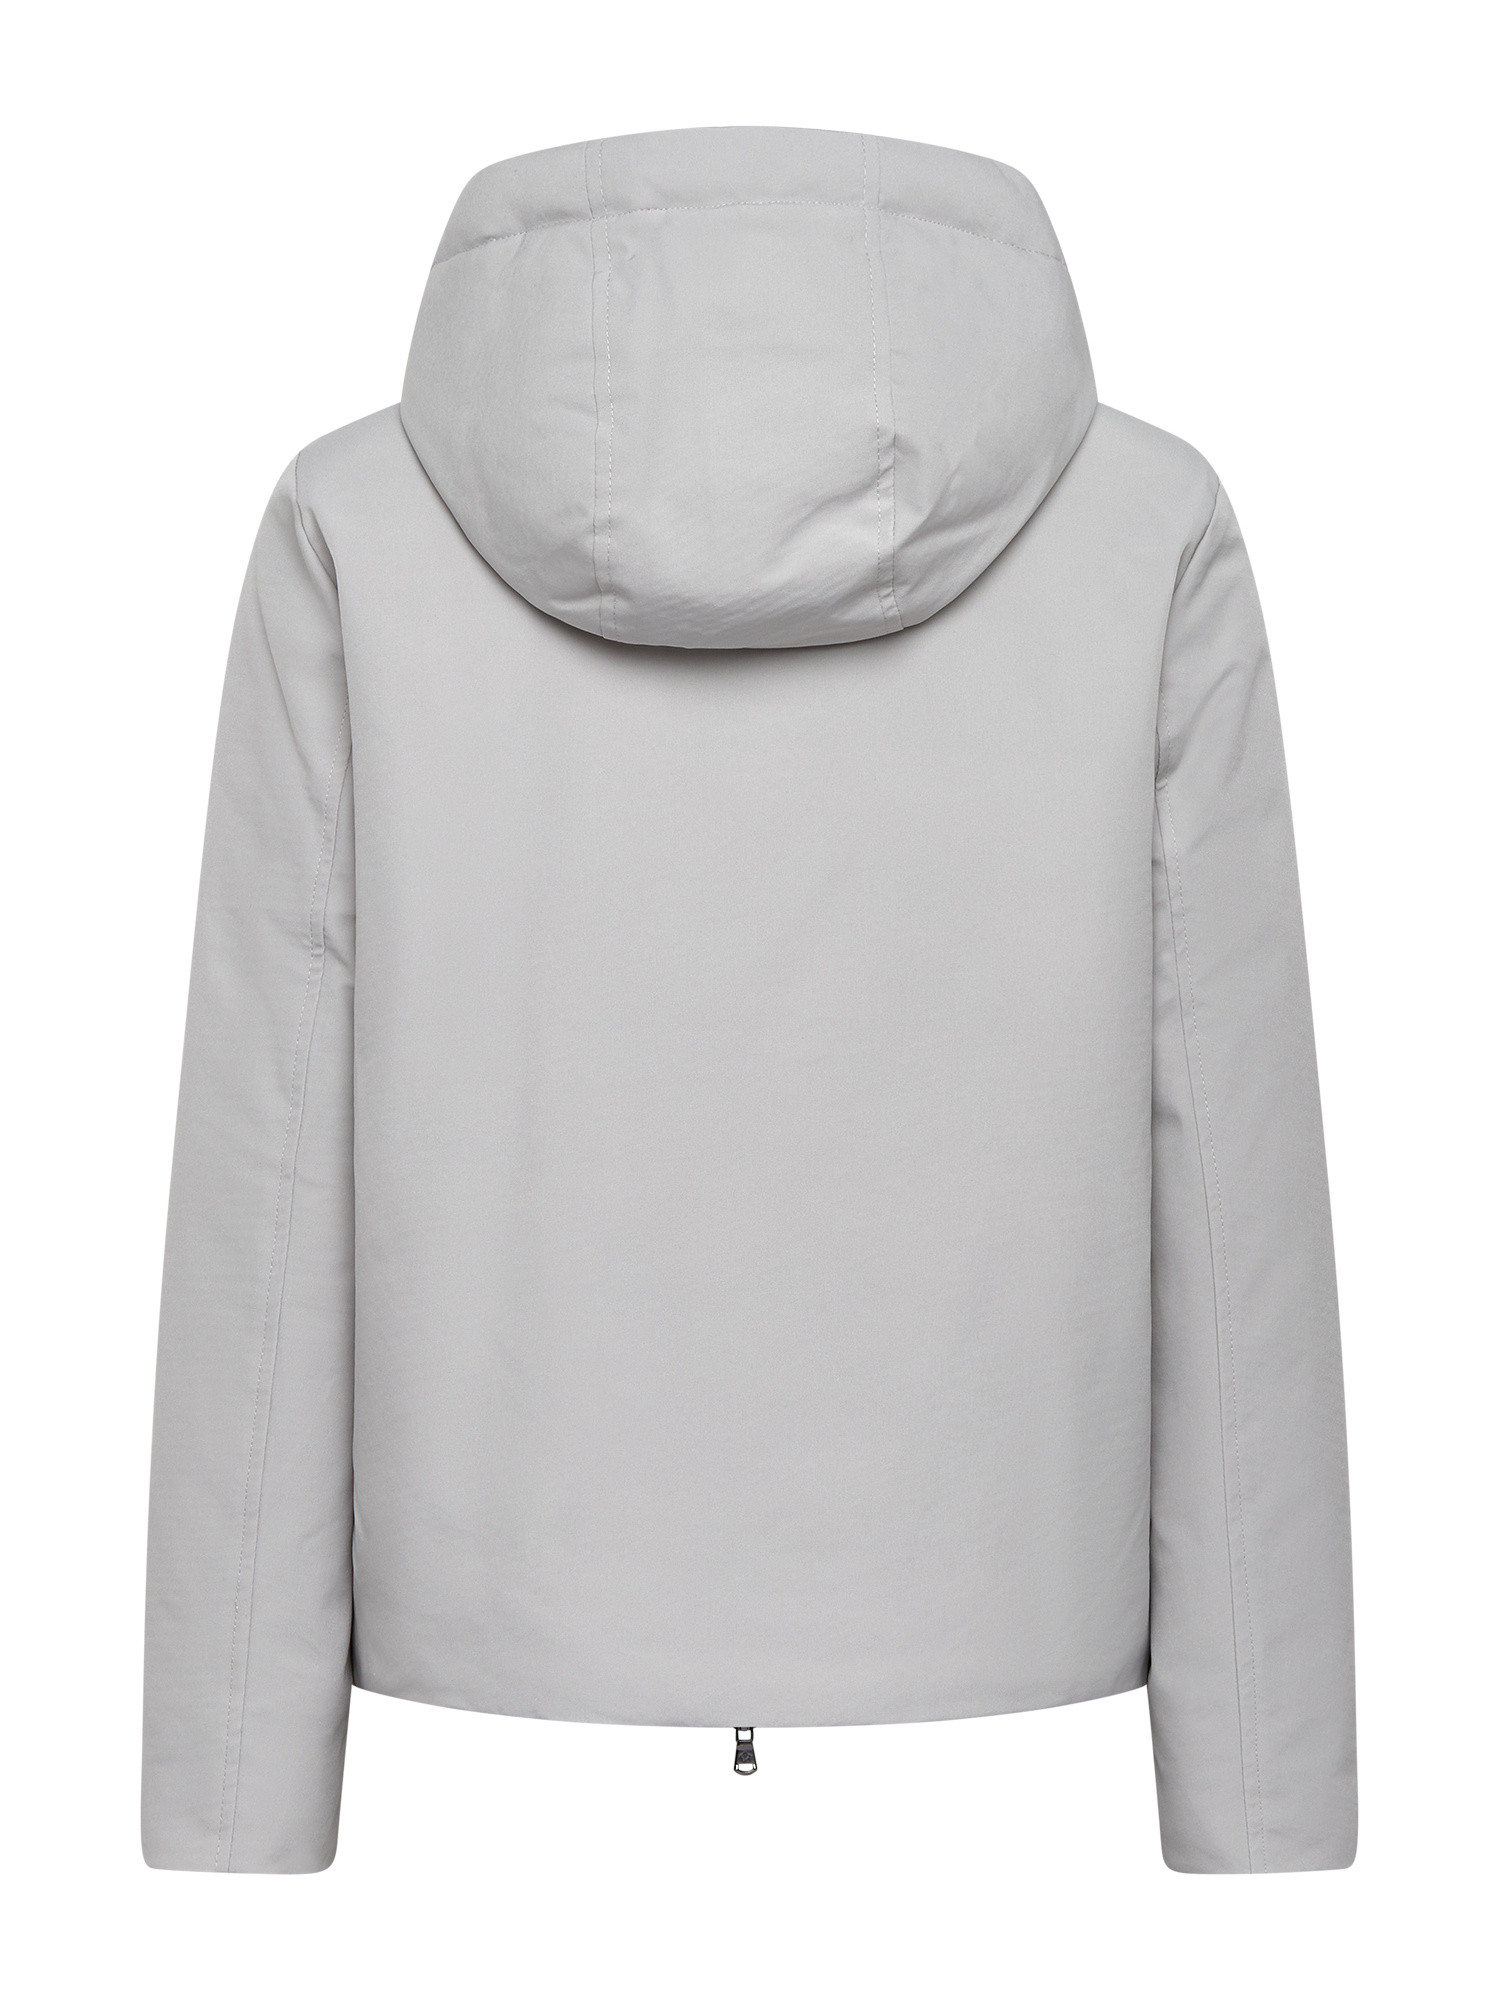 Canadian - Soft zip Jacket, Light Grey, large image number 1